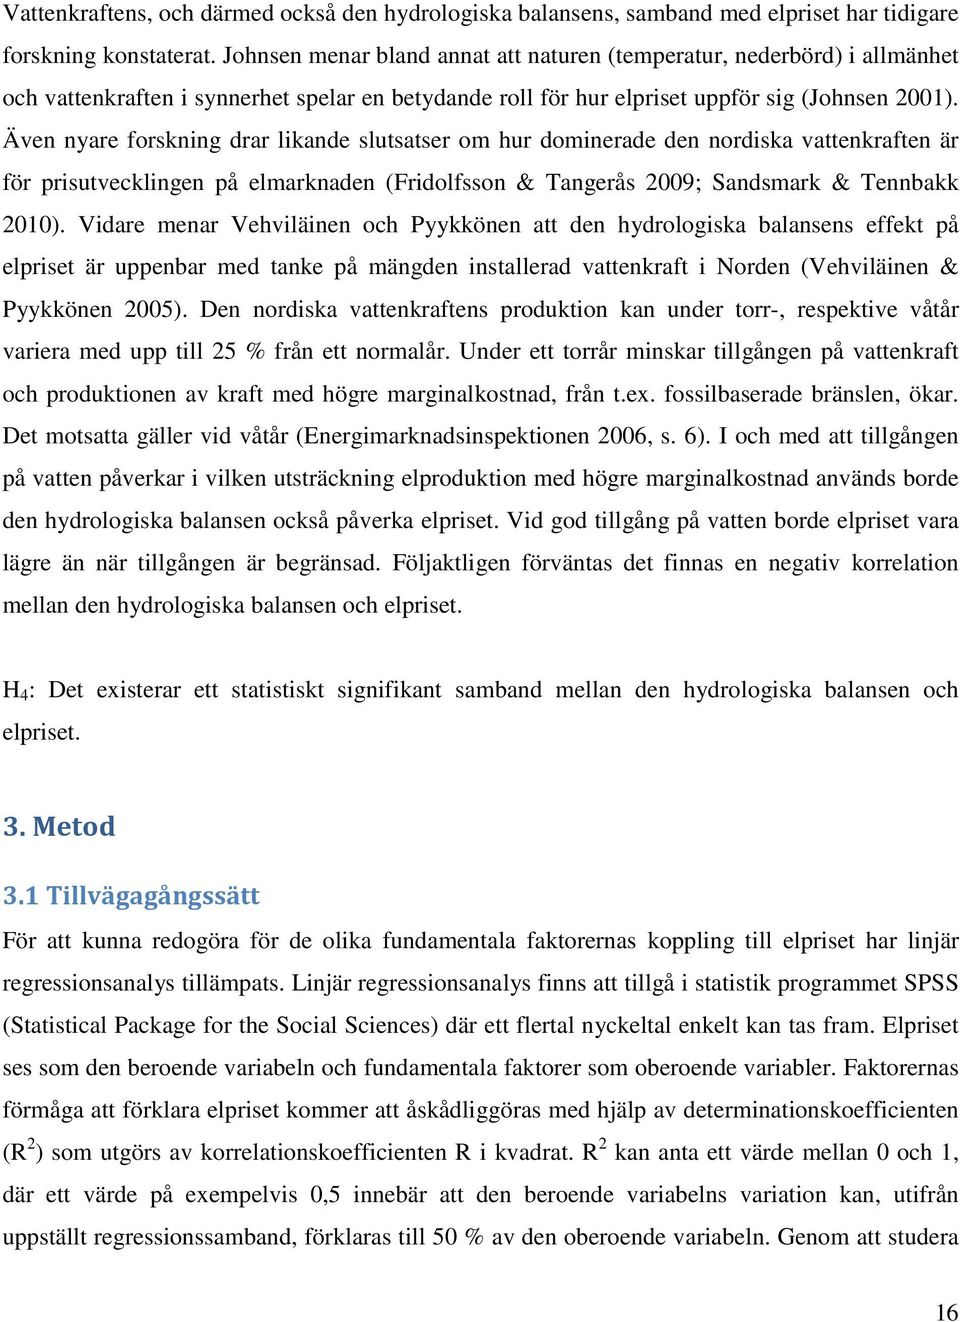 Även nyare forskning drar likande slutsatser om hur dominerade den nordiska vattenkraften är för prisutvecklingen på elmarknaden (Fridolfsson & Tangerås 2009; Sandsmark & Tennbakk 2010).